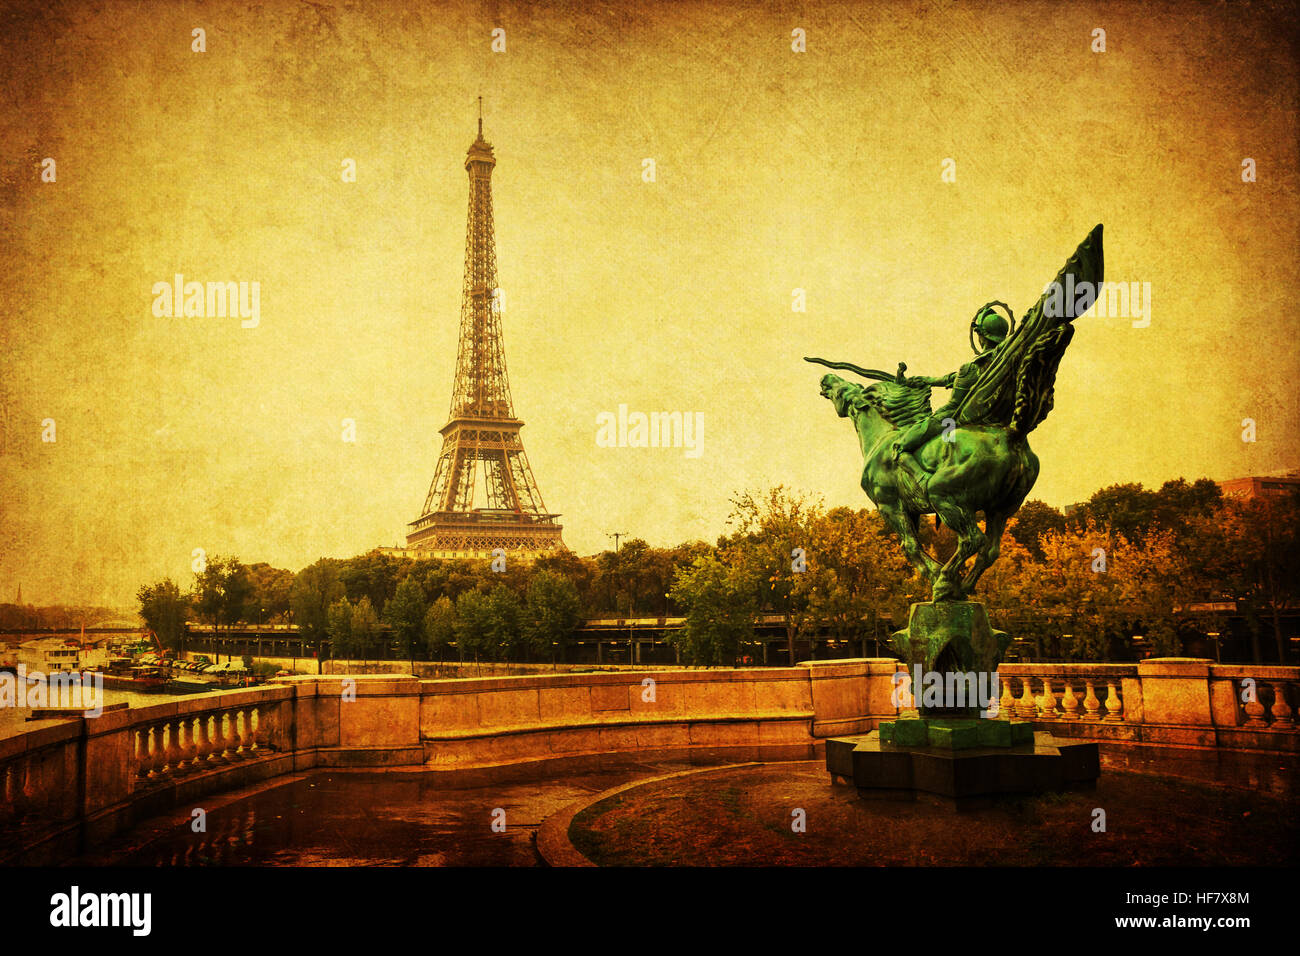 Style vintage photo de la Tour Eiffel à Paris, France Banque D'Images